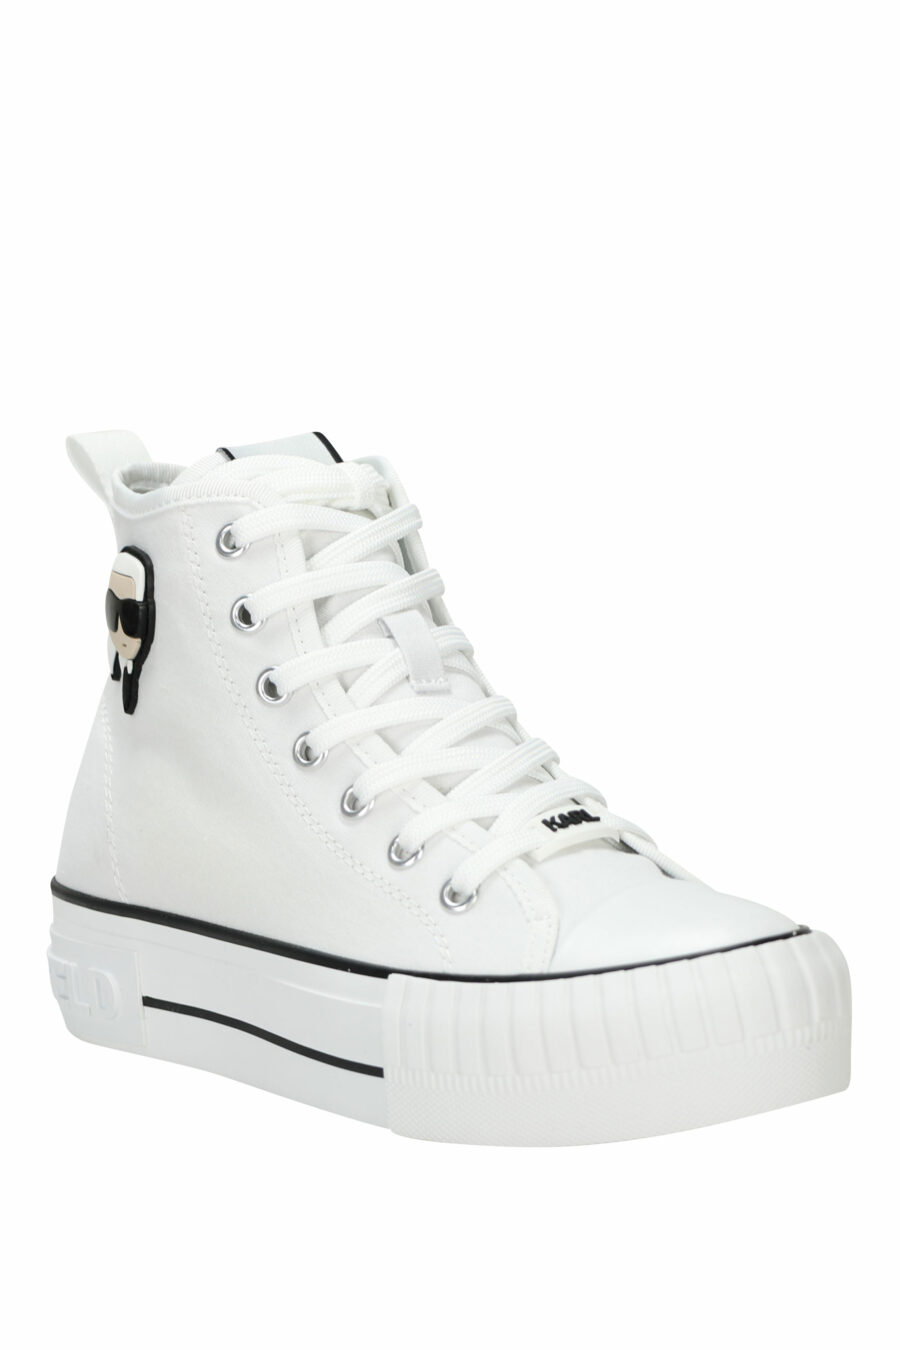 Zapatillas blancas altas estilo "converse" con minilogo de goma "karl" - 5059529384837 1